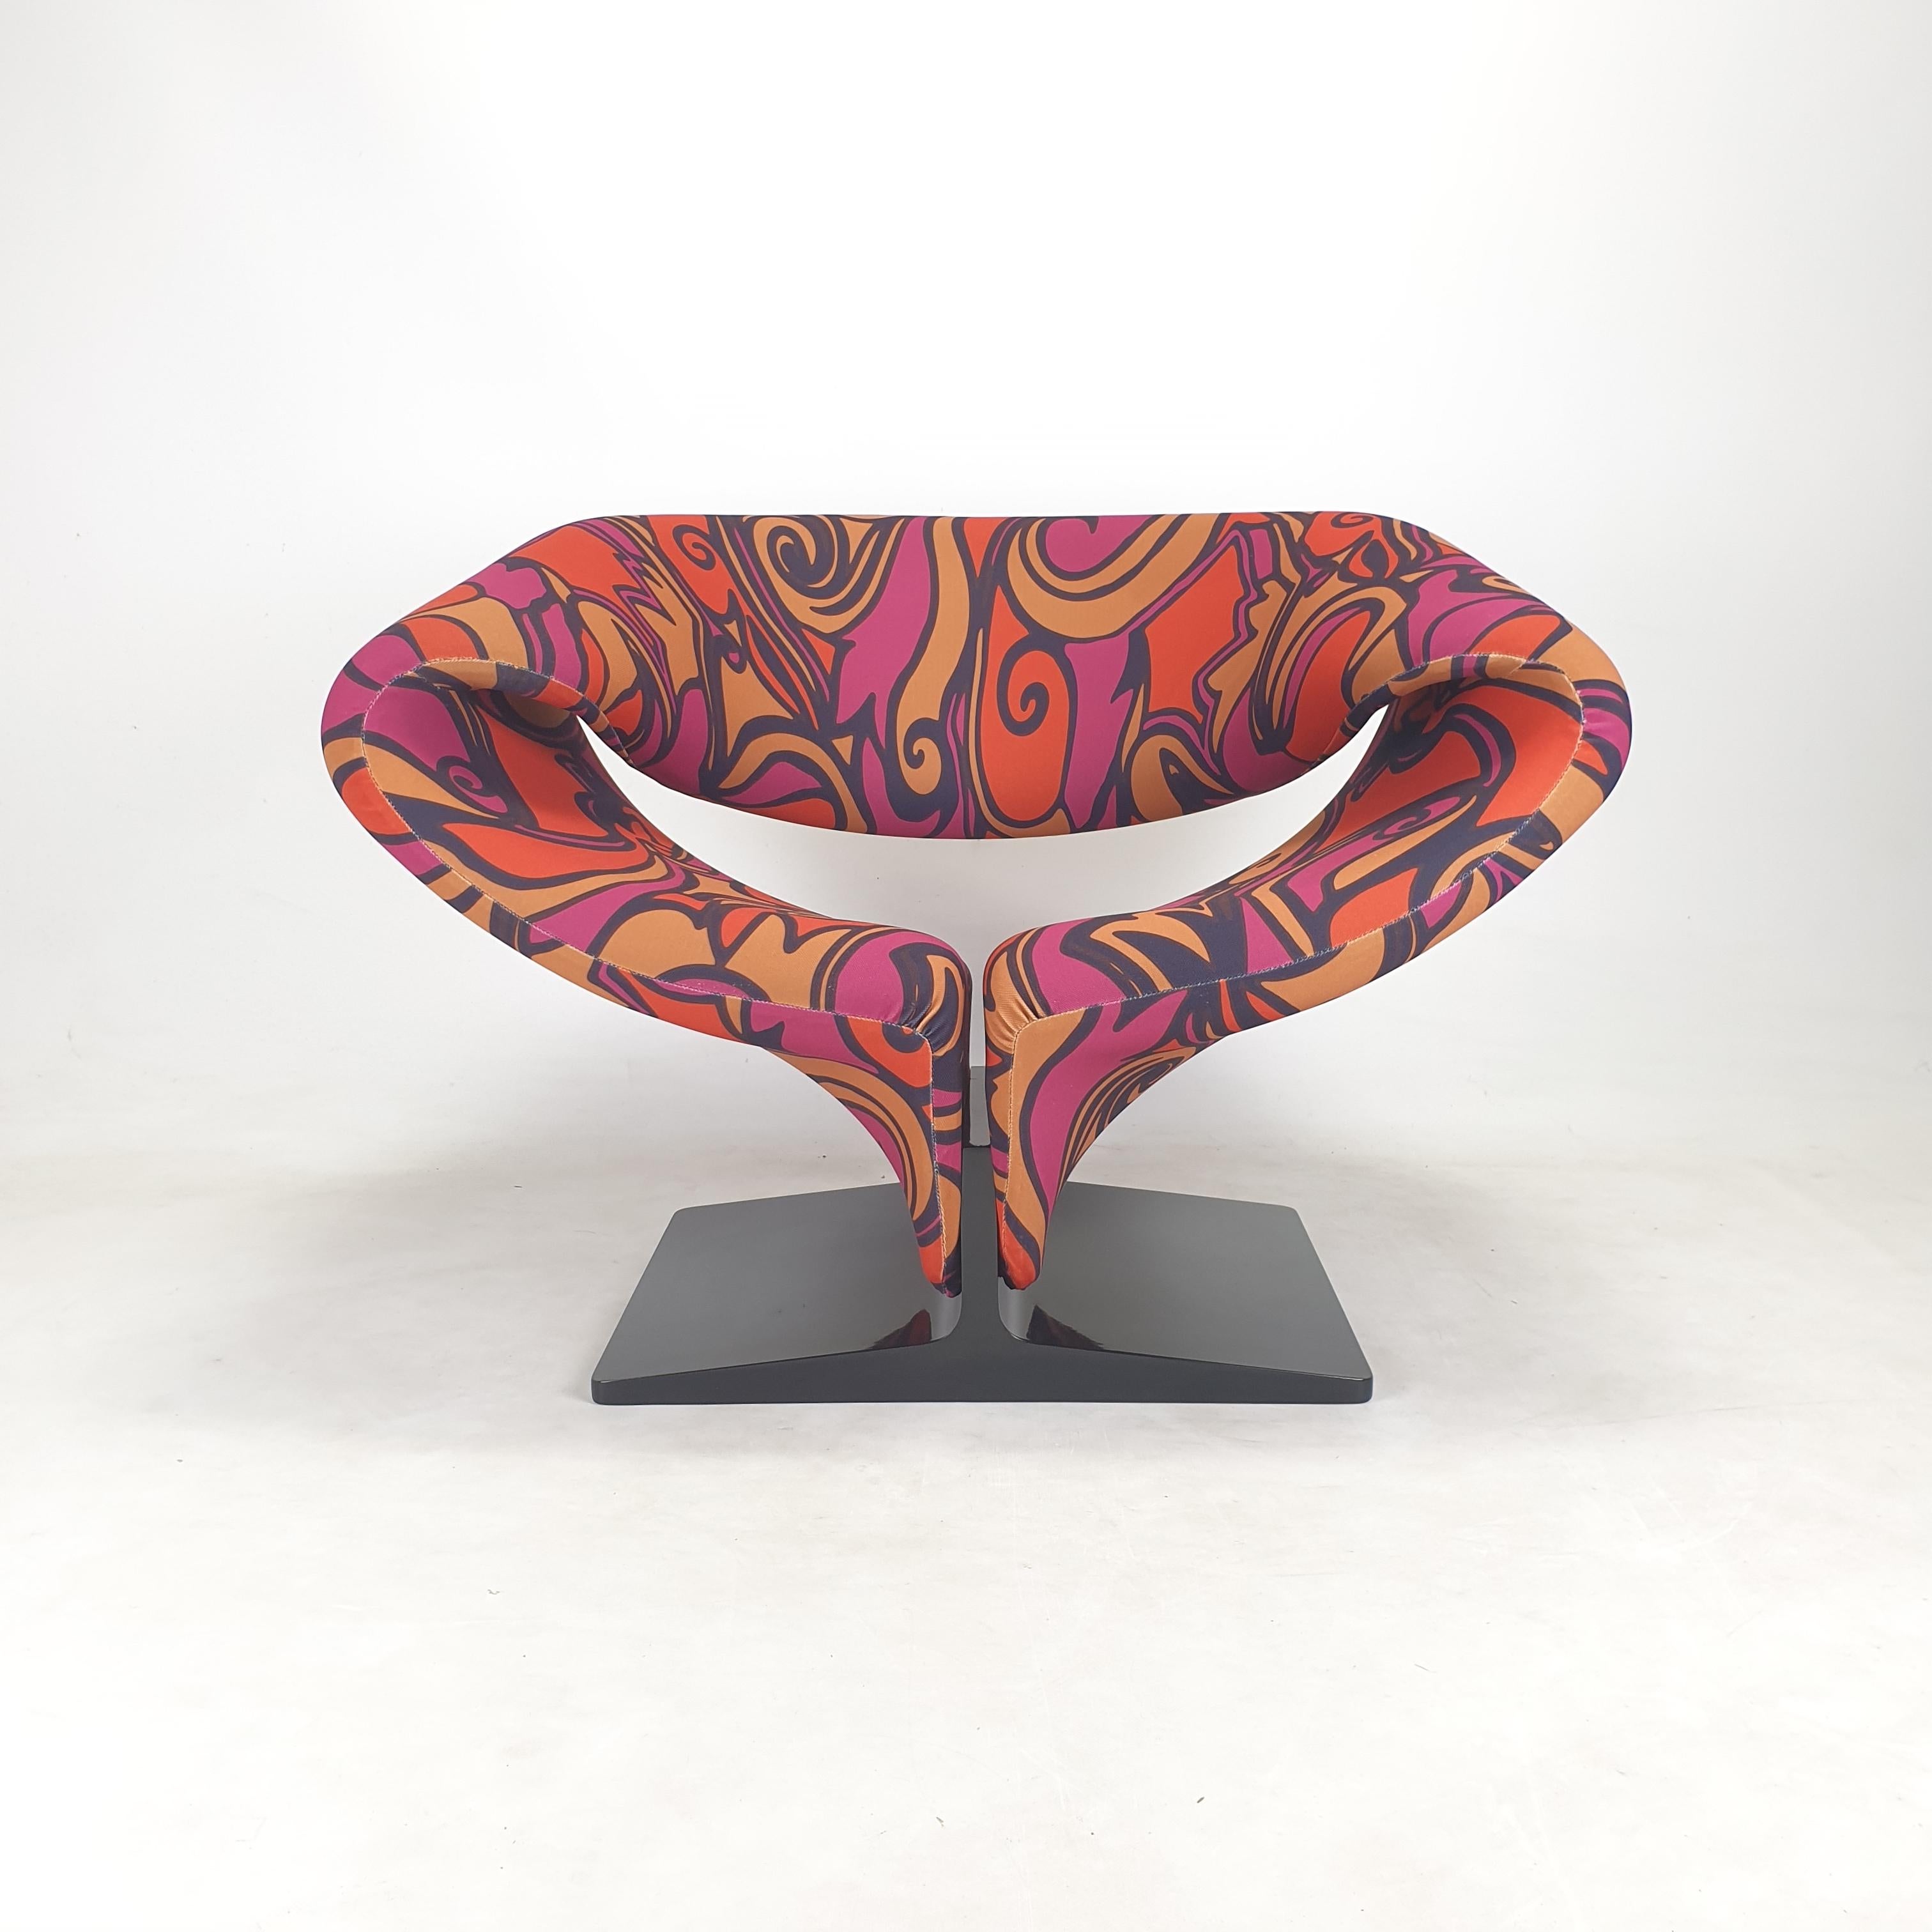 Chaise à ruban étonnante dans une édition très rare.
Il a été conçu par le célèbre Pierre Paulin (France) dans les années 60 et produit par Artifort (Pays-Bas). 
Cette pièce Icone est produite dans les années 2000.

La chaise est revêtue du tissu